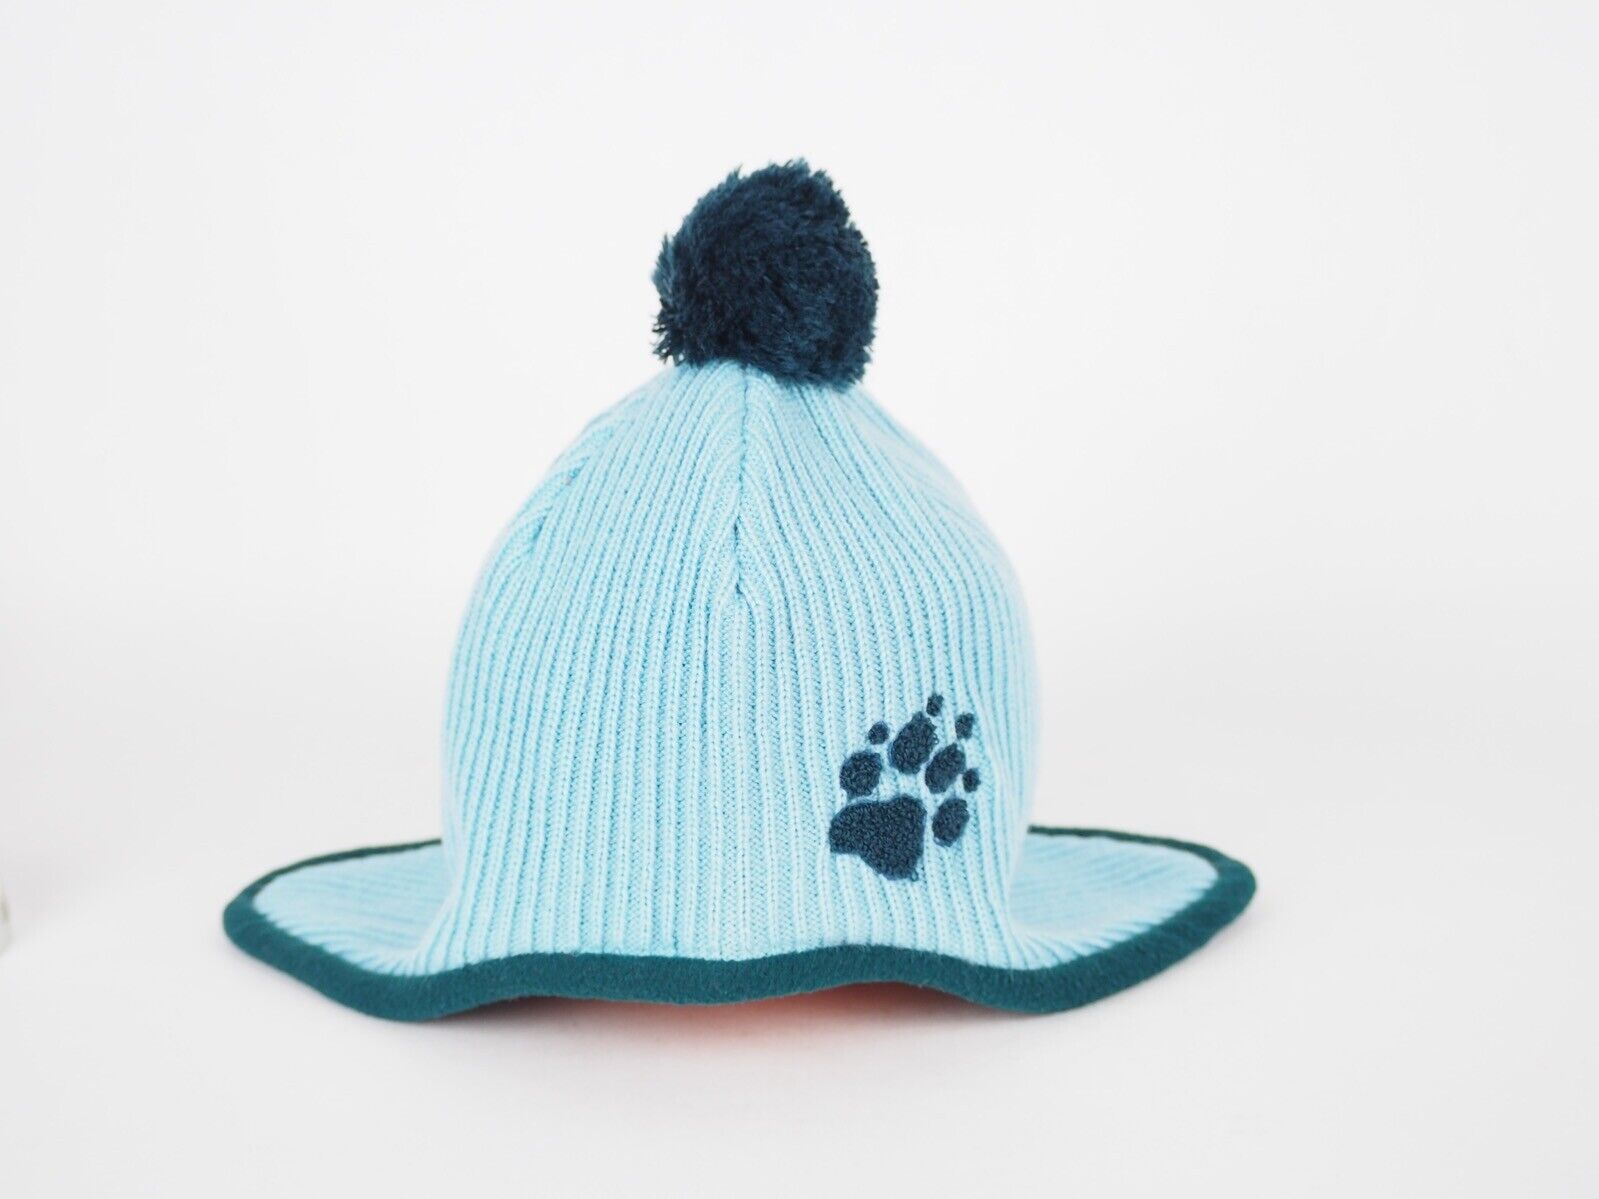 Kids Jack Wolfskin Knitted Ear Blue Cap War 1901091 Mineral Hat – Style London Pompom Top